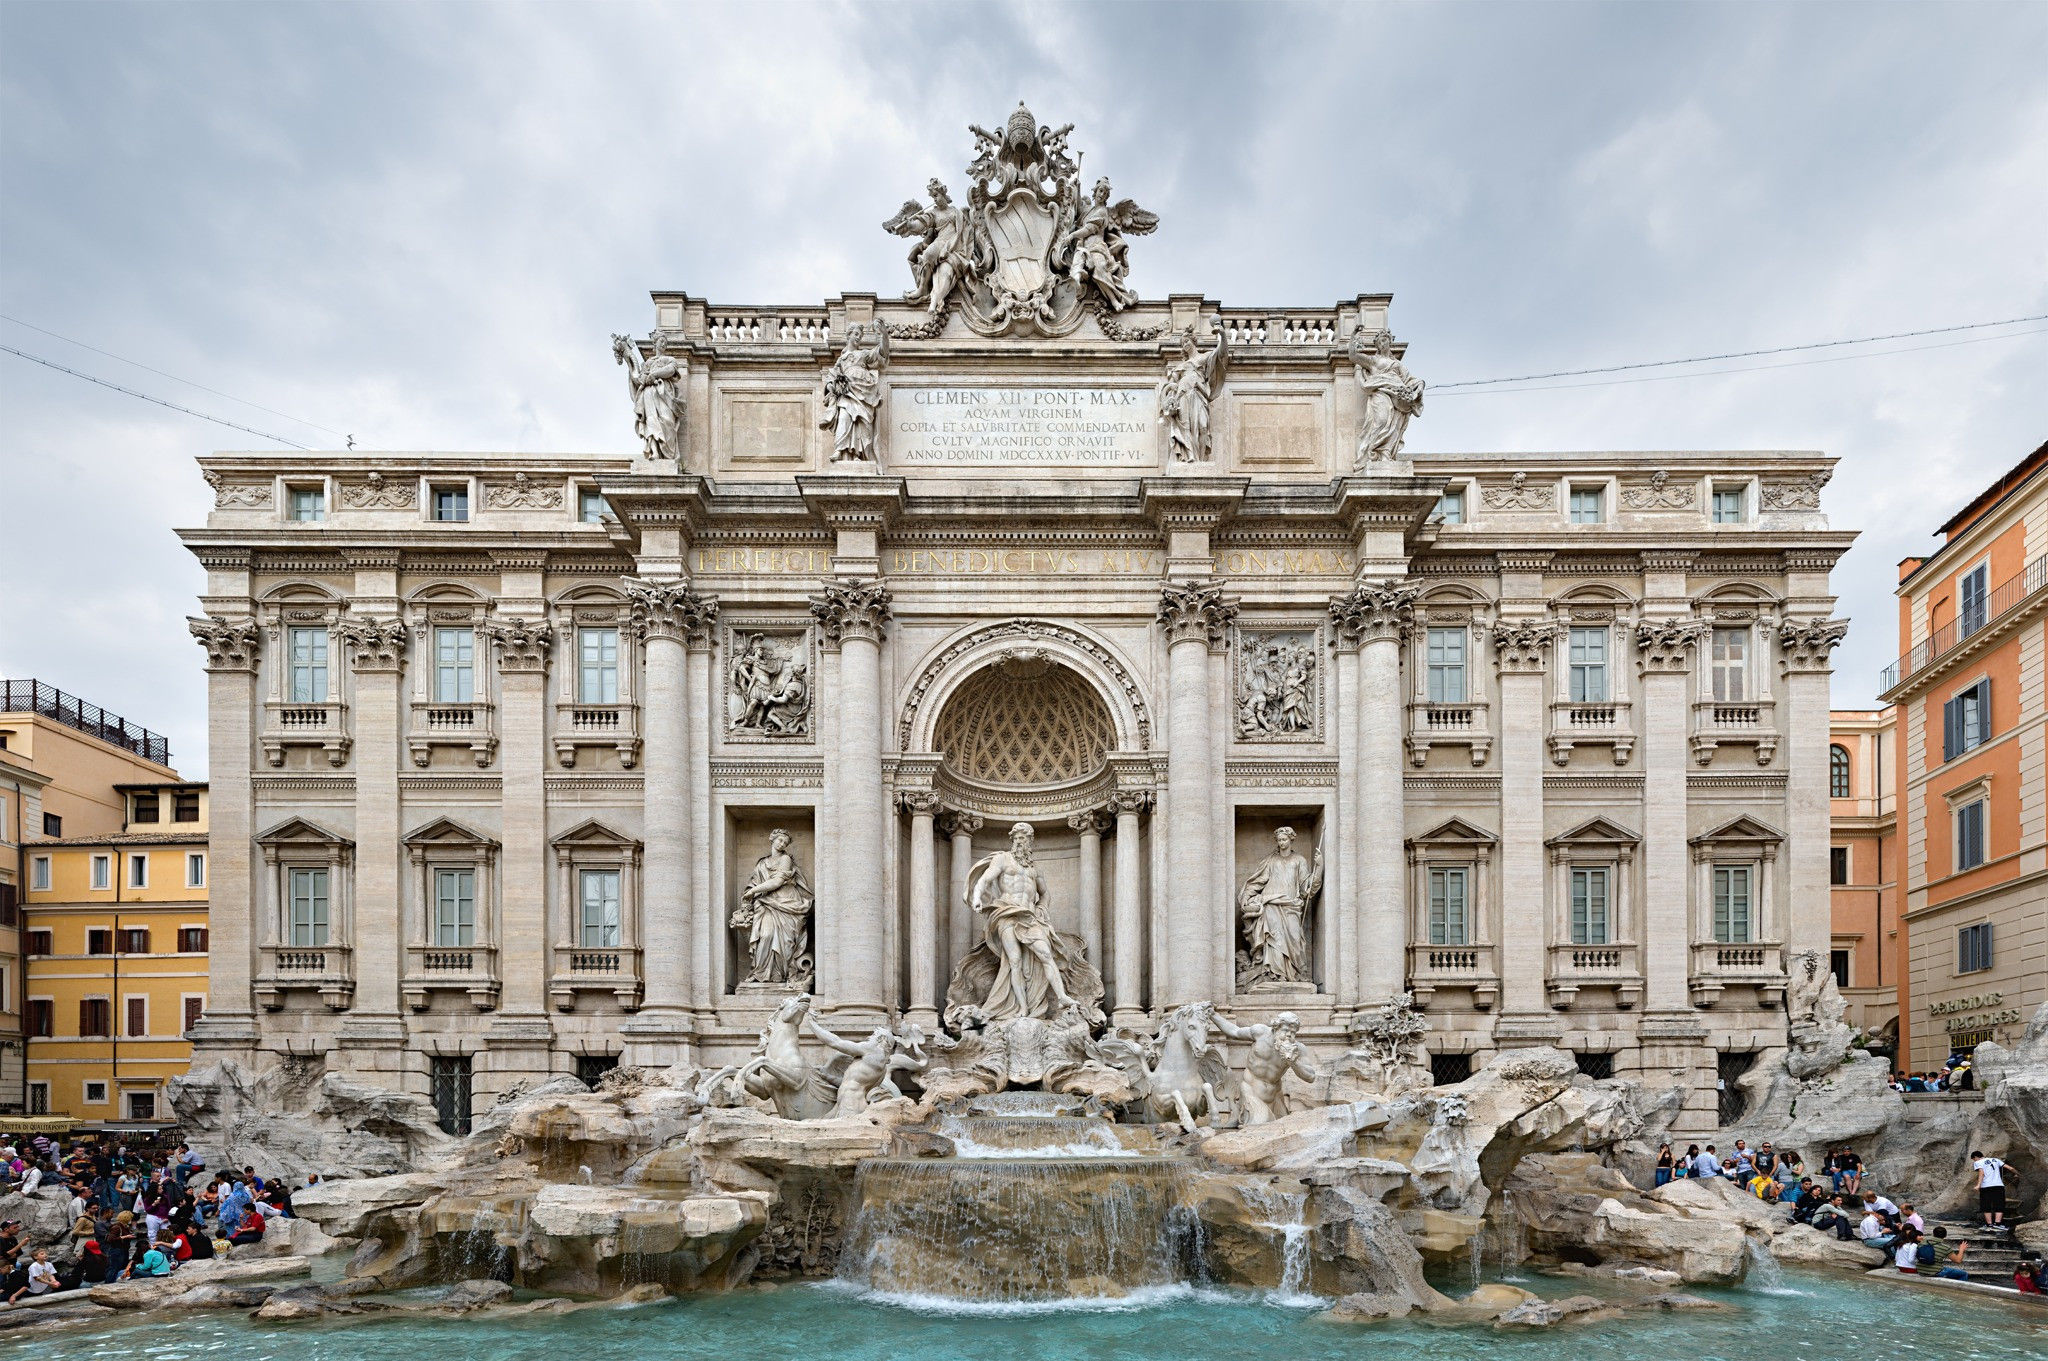 De 'Trevi-fontein' in barokstijl is ontworpen door Nicola Salvi en voltooid door Giuseppe Pannini in 1762